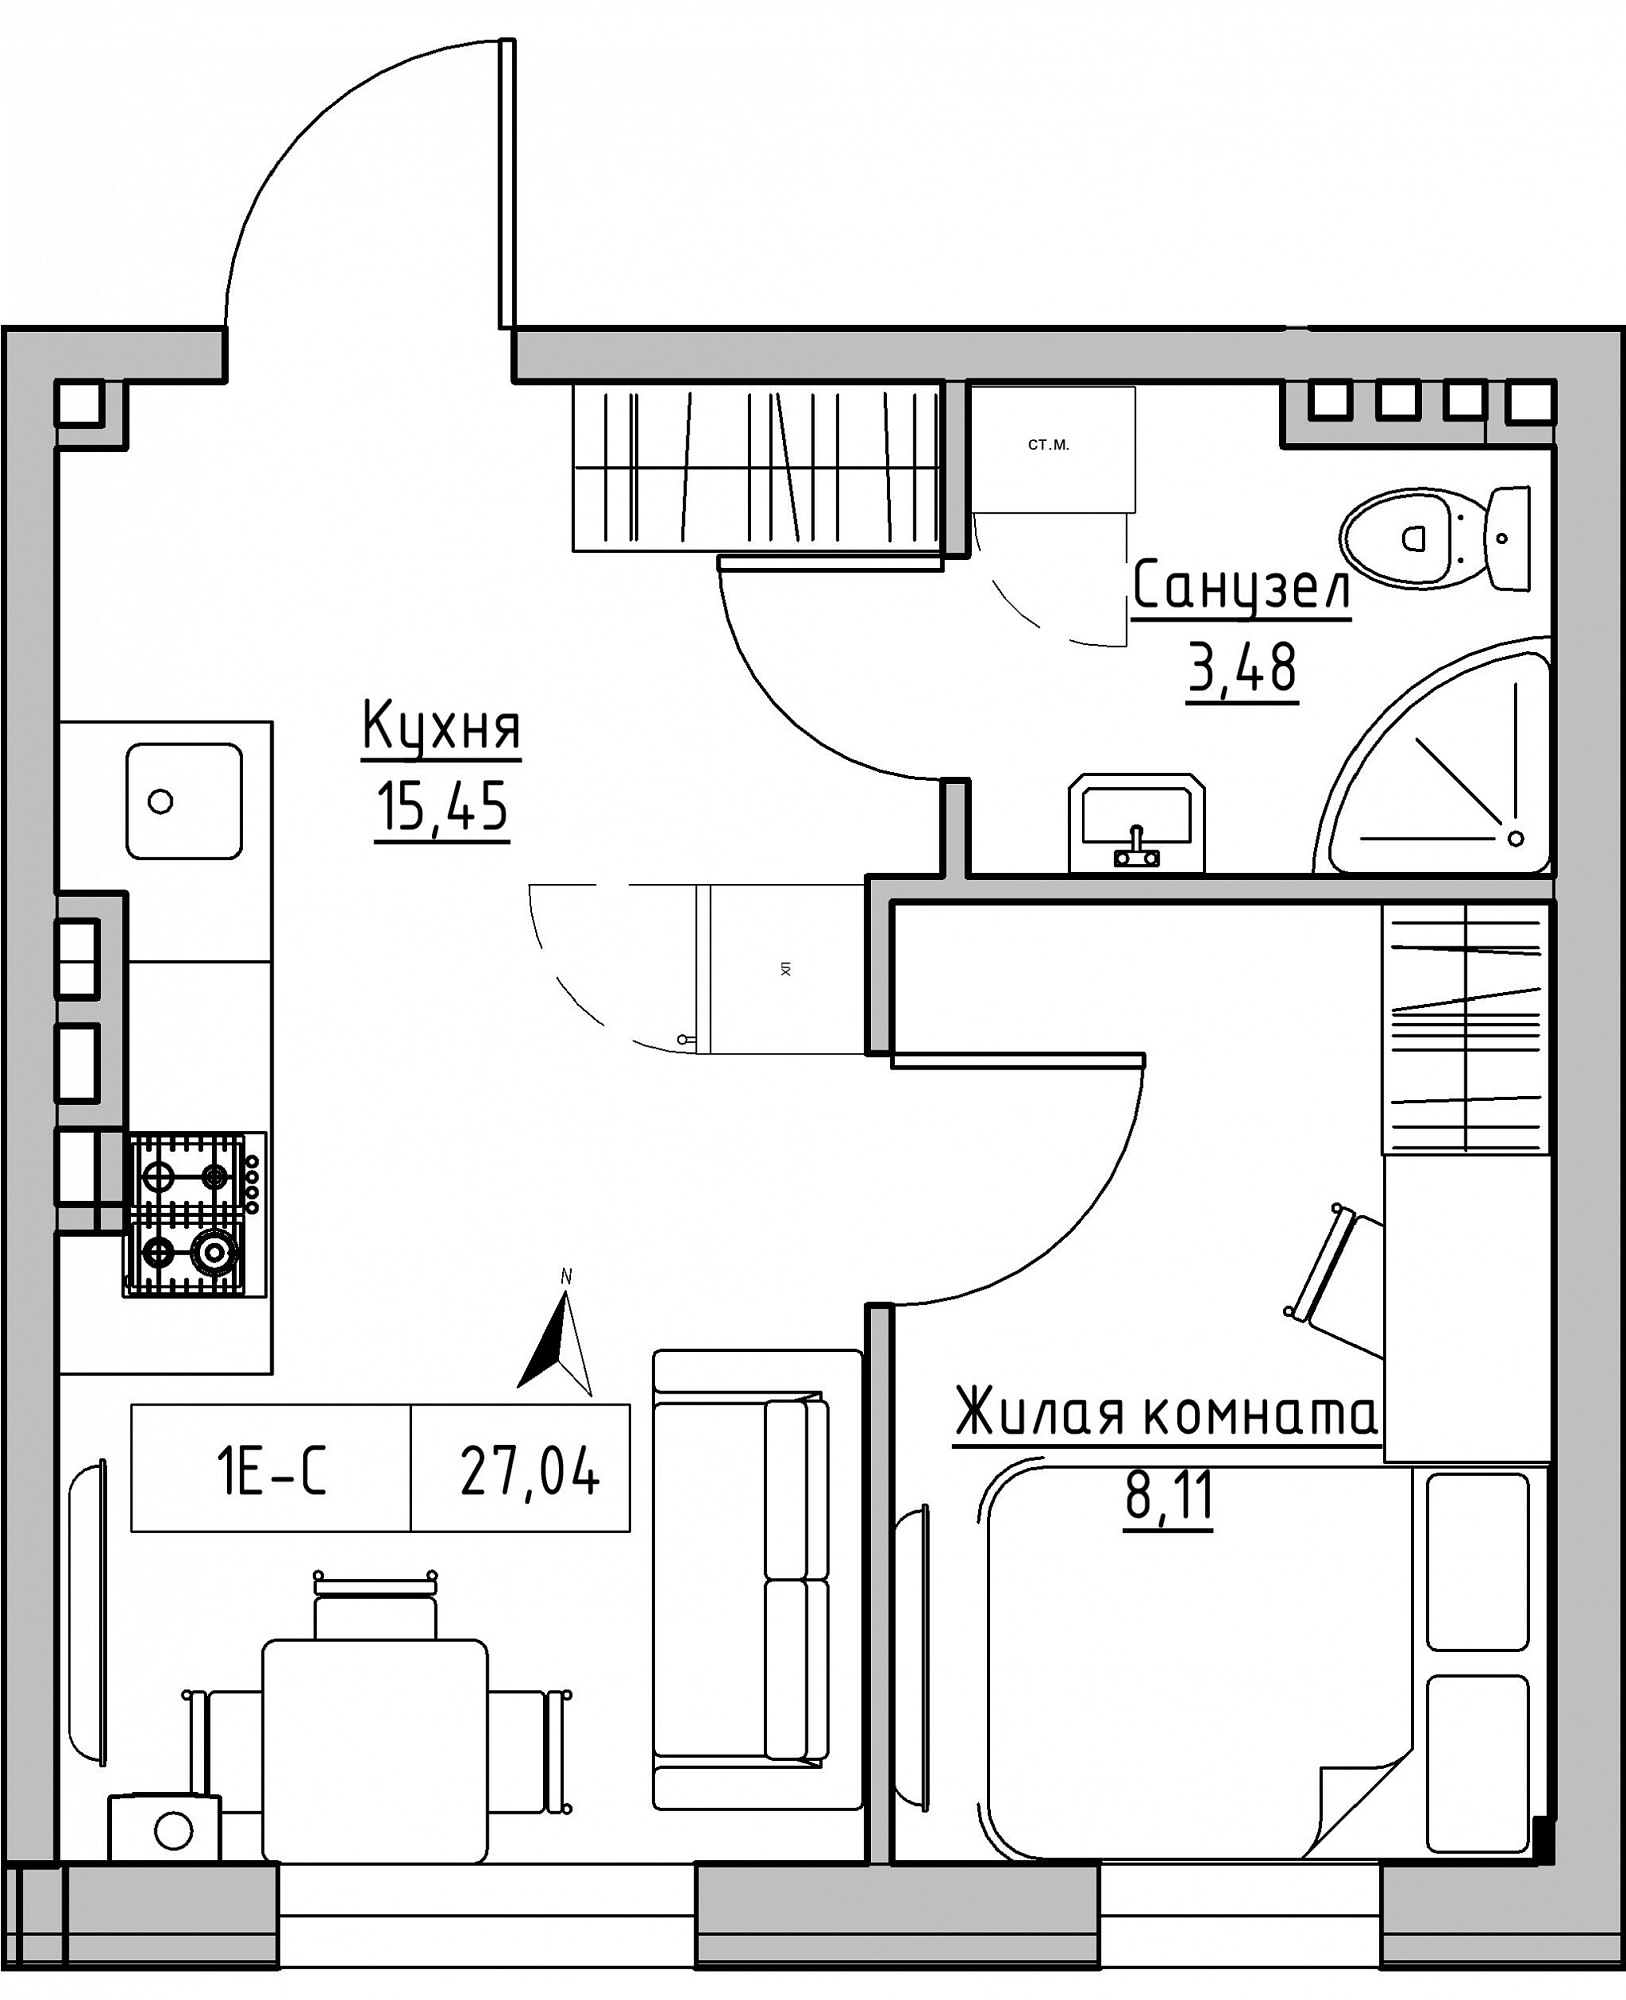 Планування 1-к квартира площею 27.04м2, KS-024-05/0004.